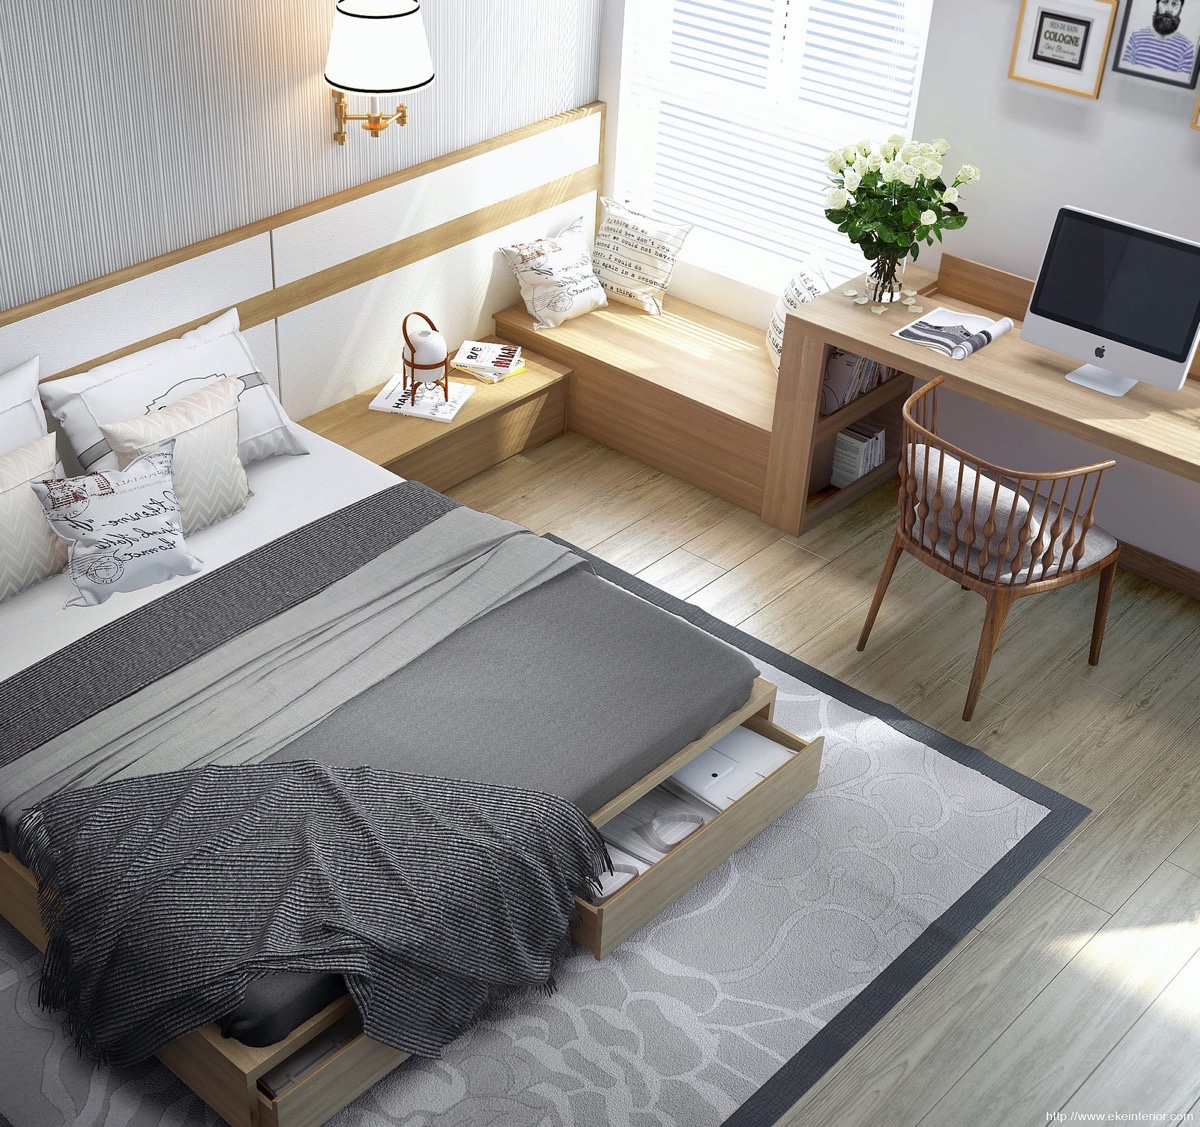 Thiết kế nội thất hiện đại, thông minh mang đến cho phòng ngủ nhỏ sự tiện nghi và tính thẩm mỹ cao. Tiện ích trong phòng không kém gì những phòng ngủ rộng lớn, sang trọng.